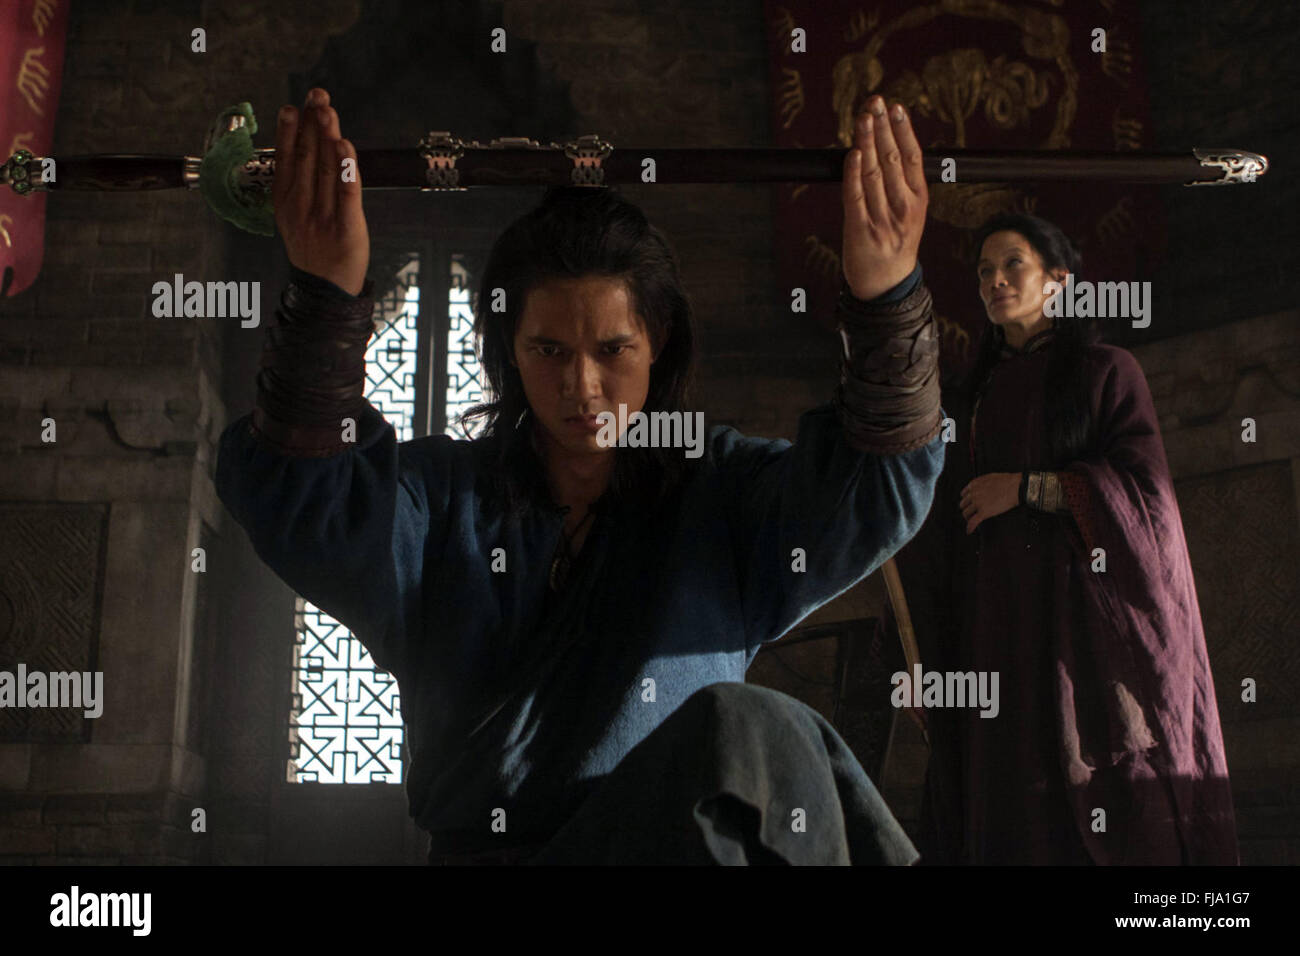 Tigre y Dragón: la espada del destino es un American-Chinese 2016 película  de artes marciales dirigida por Yuen Woo-ping y escrito por John Fusco,  basada en la novela de Caballero de Hierro,